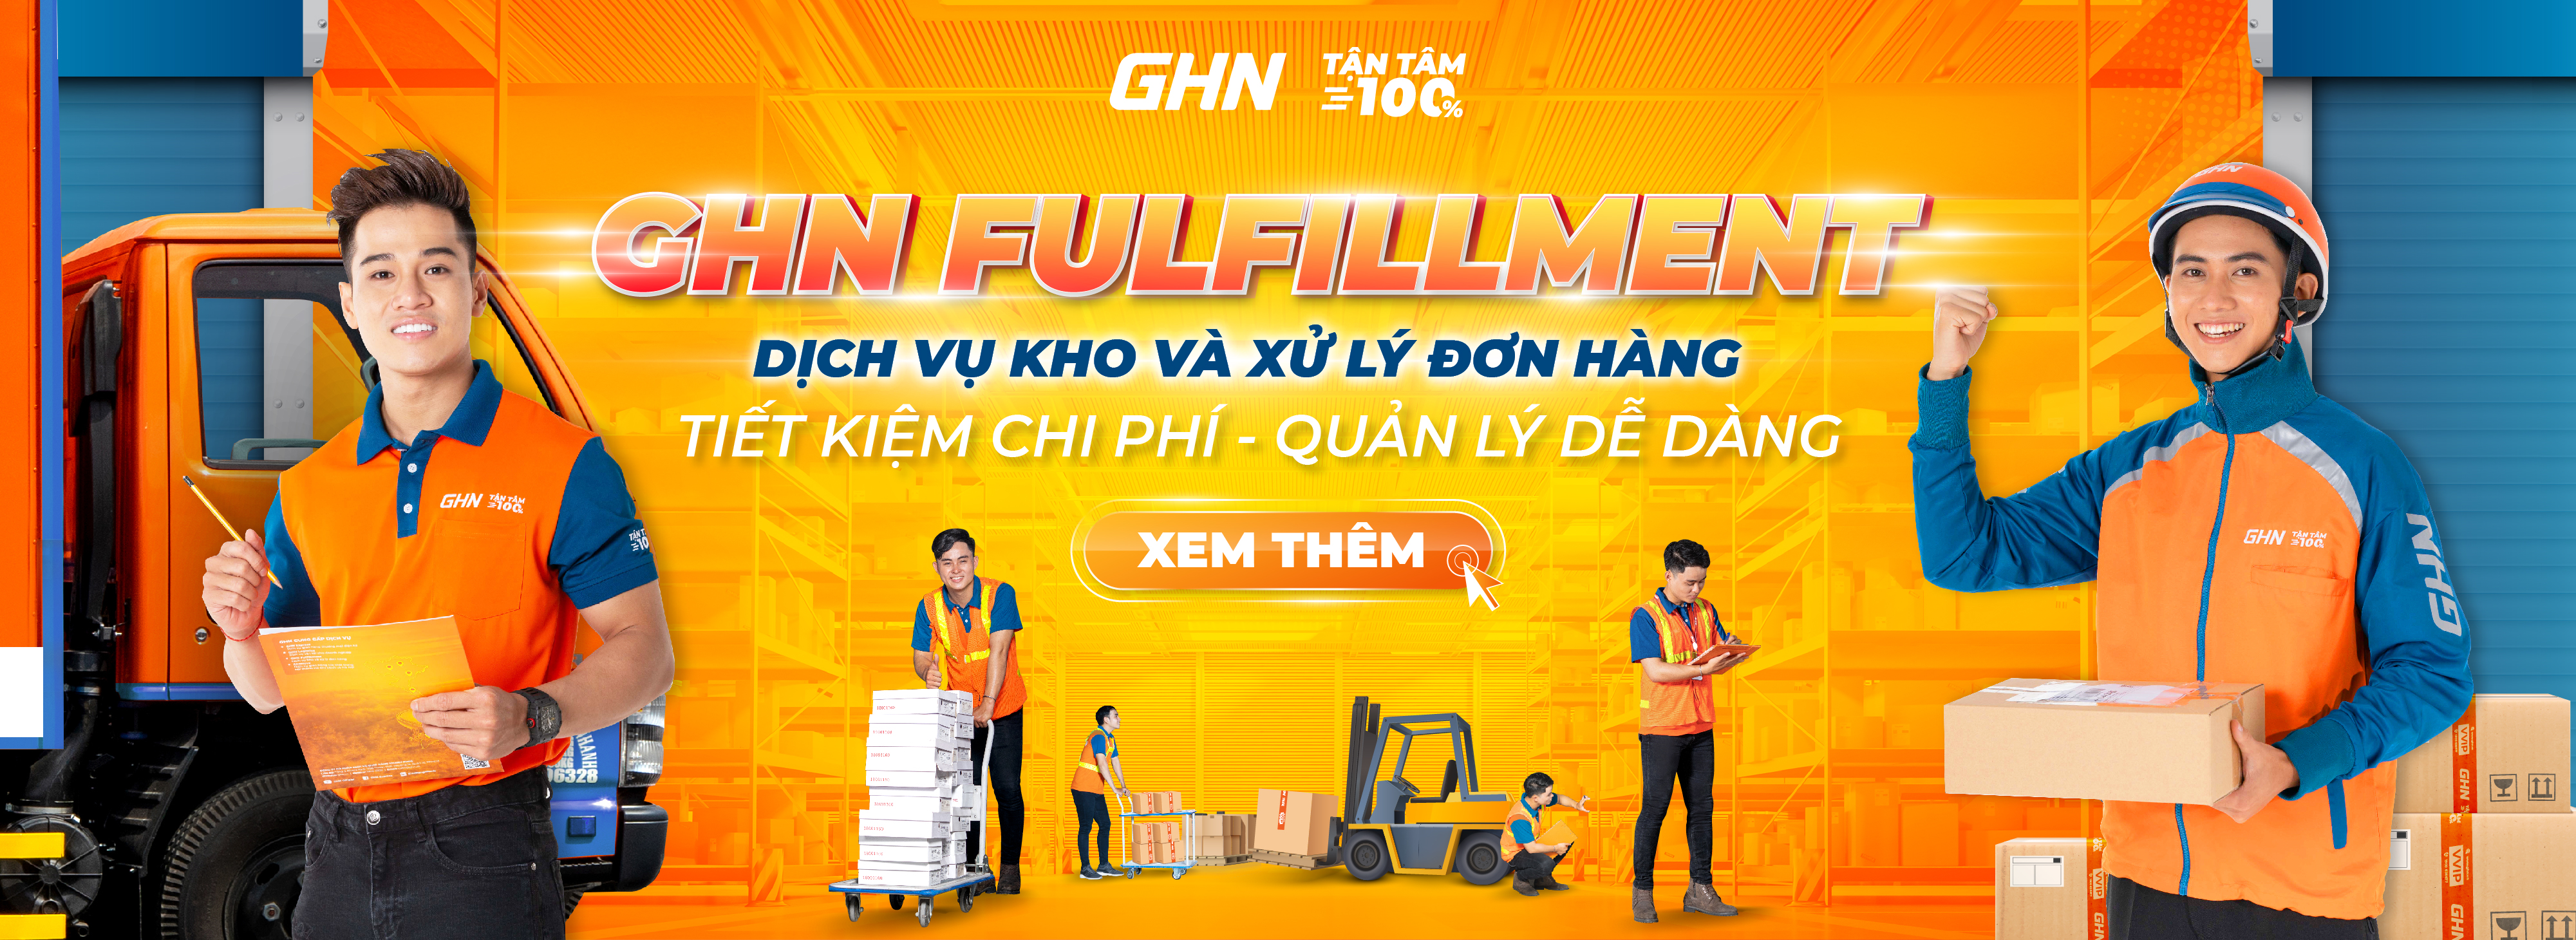 GHN Fulfillment - Dịch vụ kho và xử lý đơn hàng